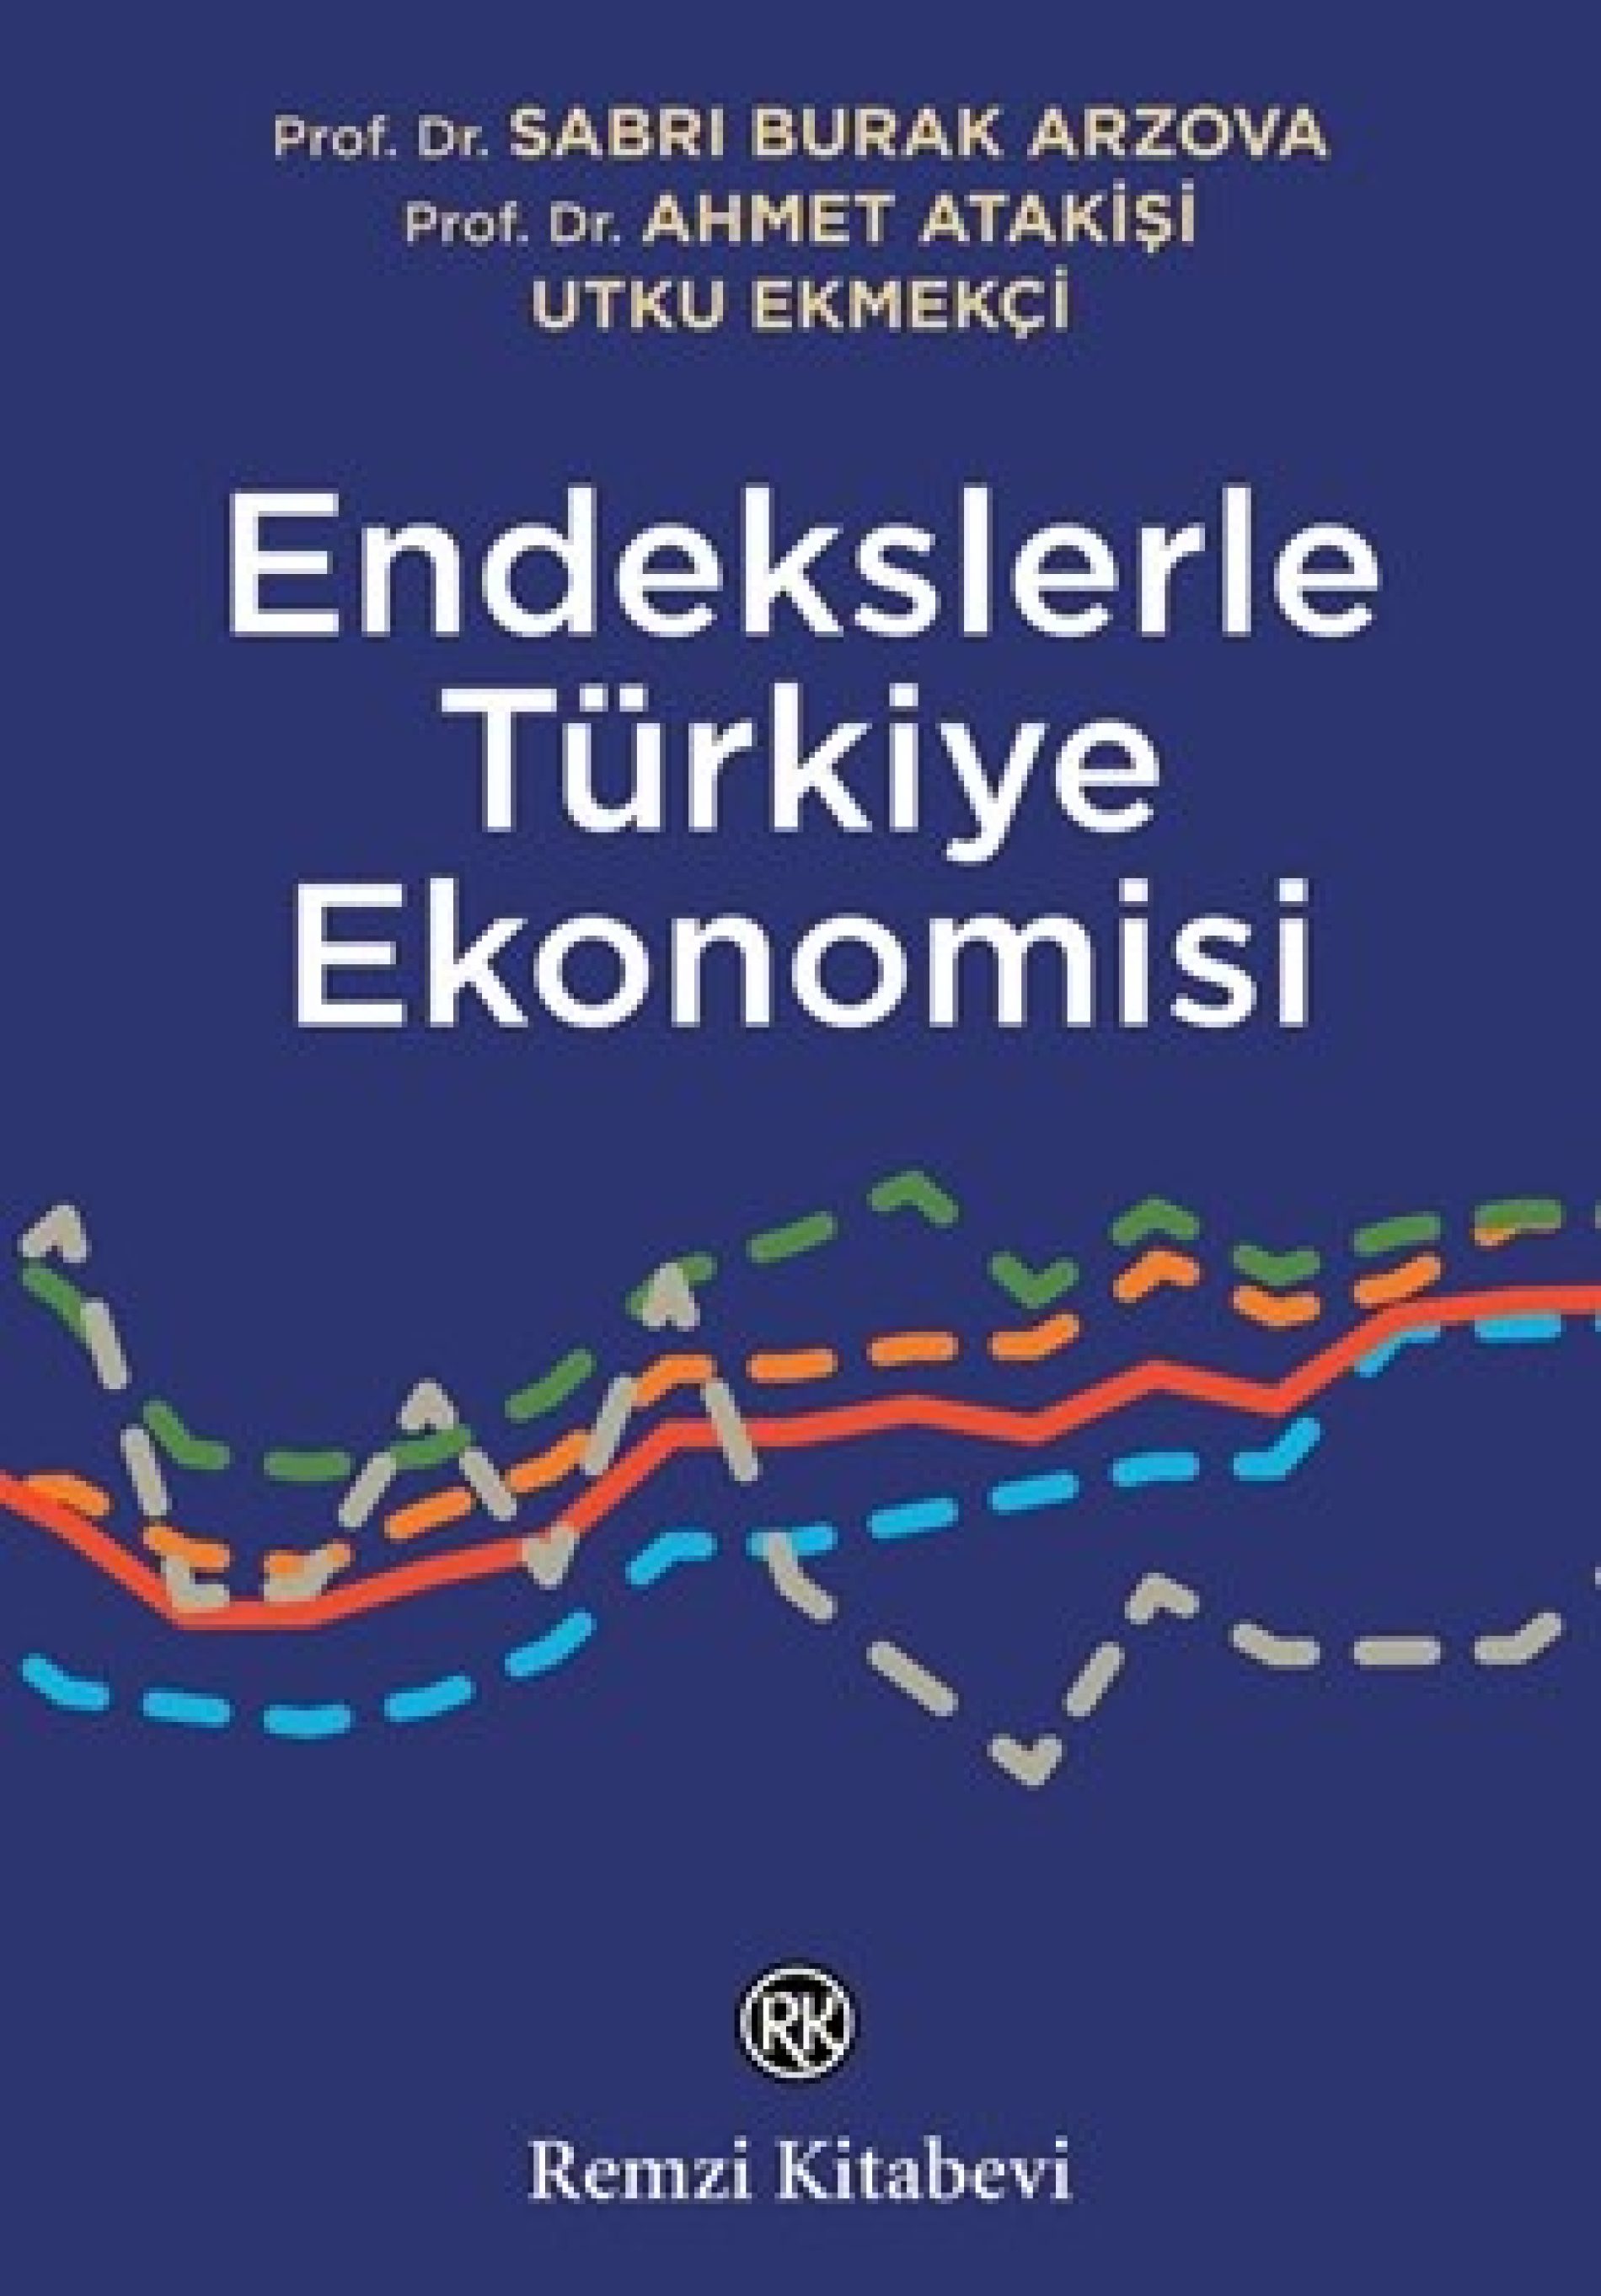 Yayınlar ve Yorumlar: Endekslerle Türkiye Ekonomisi